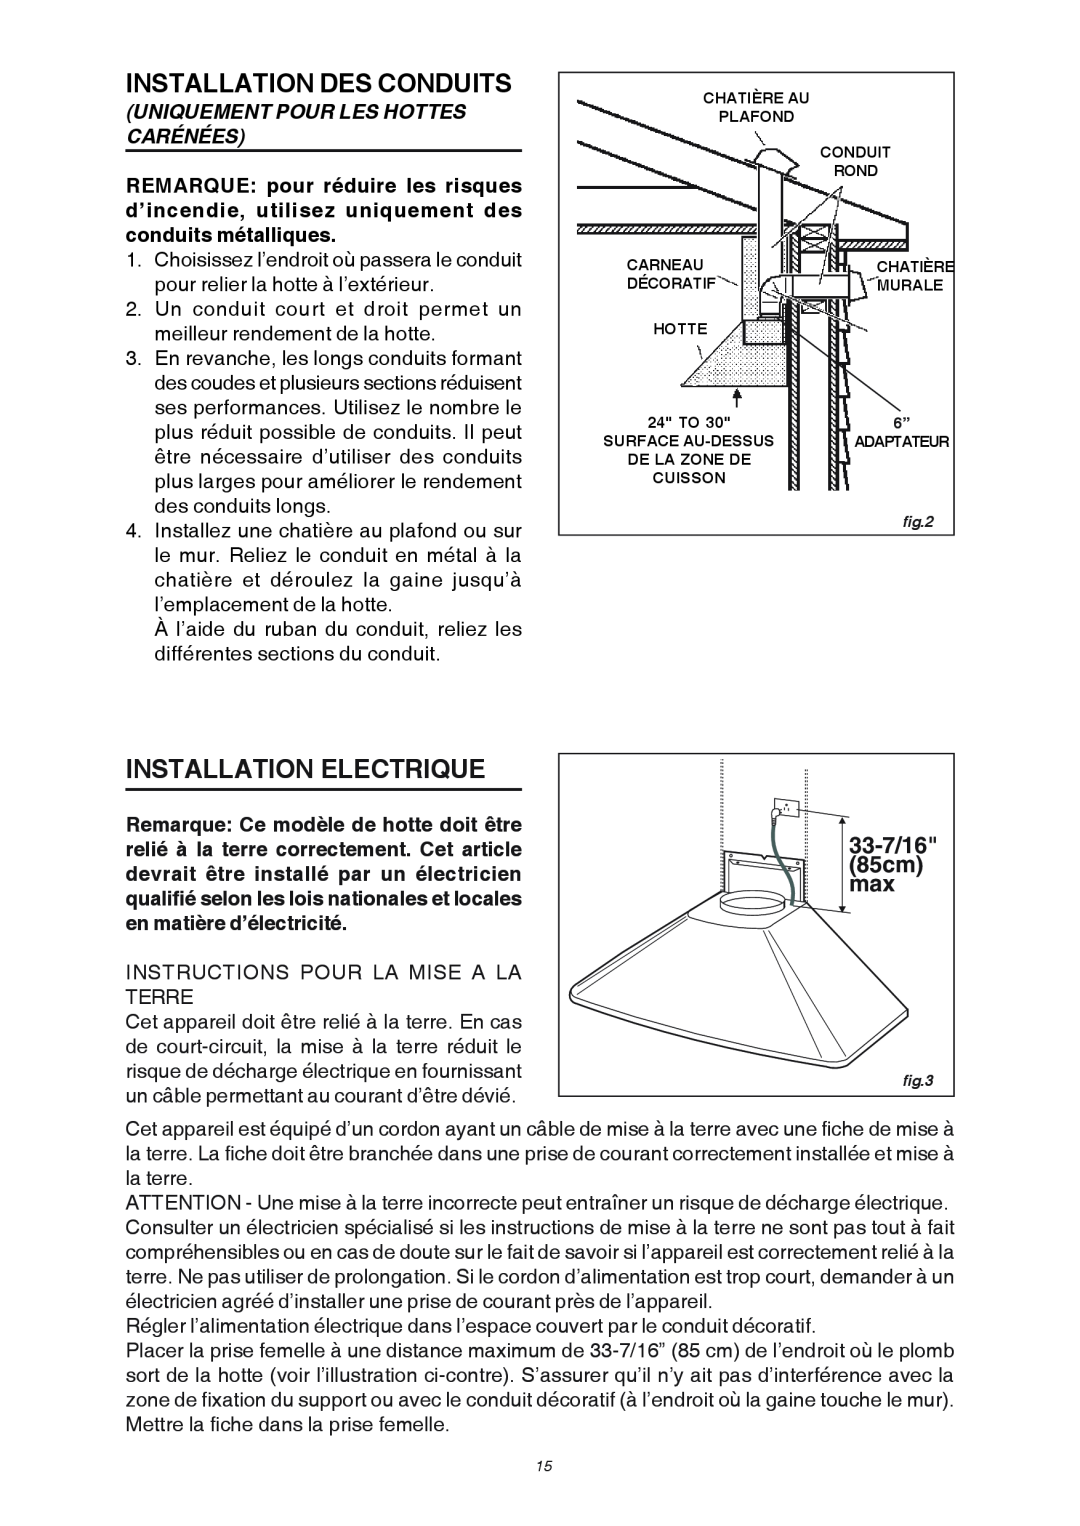 Broan RM503604 Installation Des Conduits, Installation Electrique, Uniquement Pour Les Hottes Carénées, 33-7/16, 85cm 